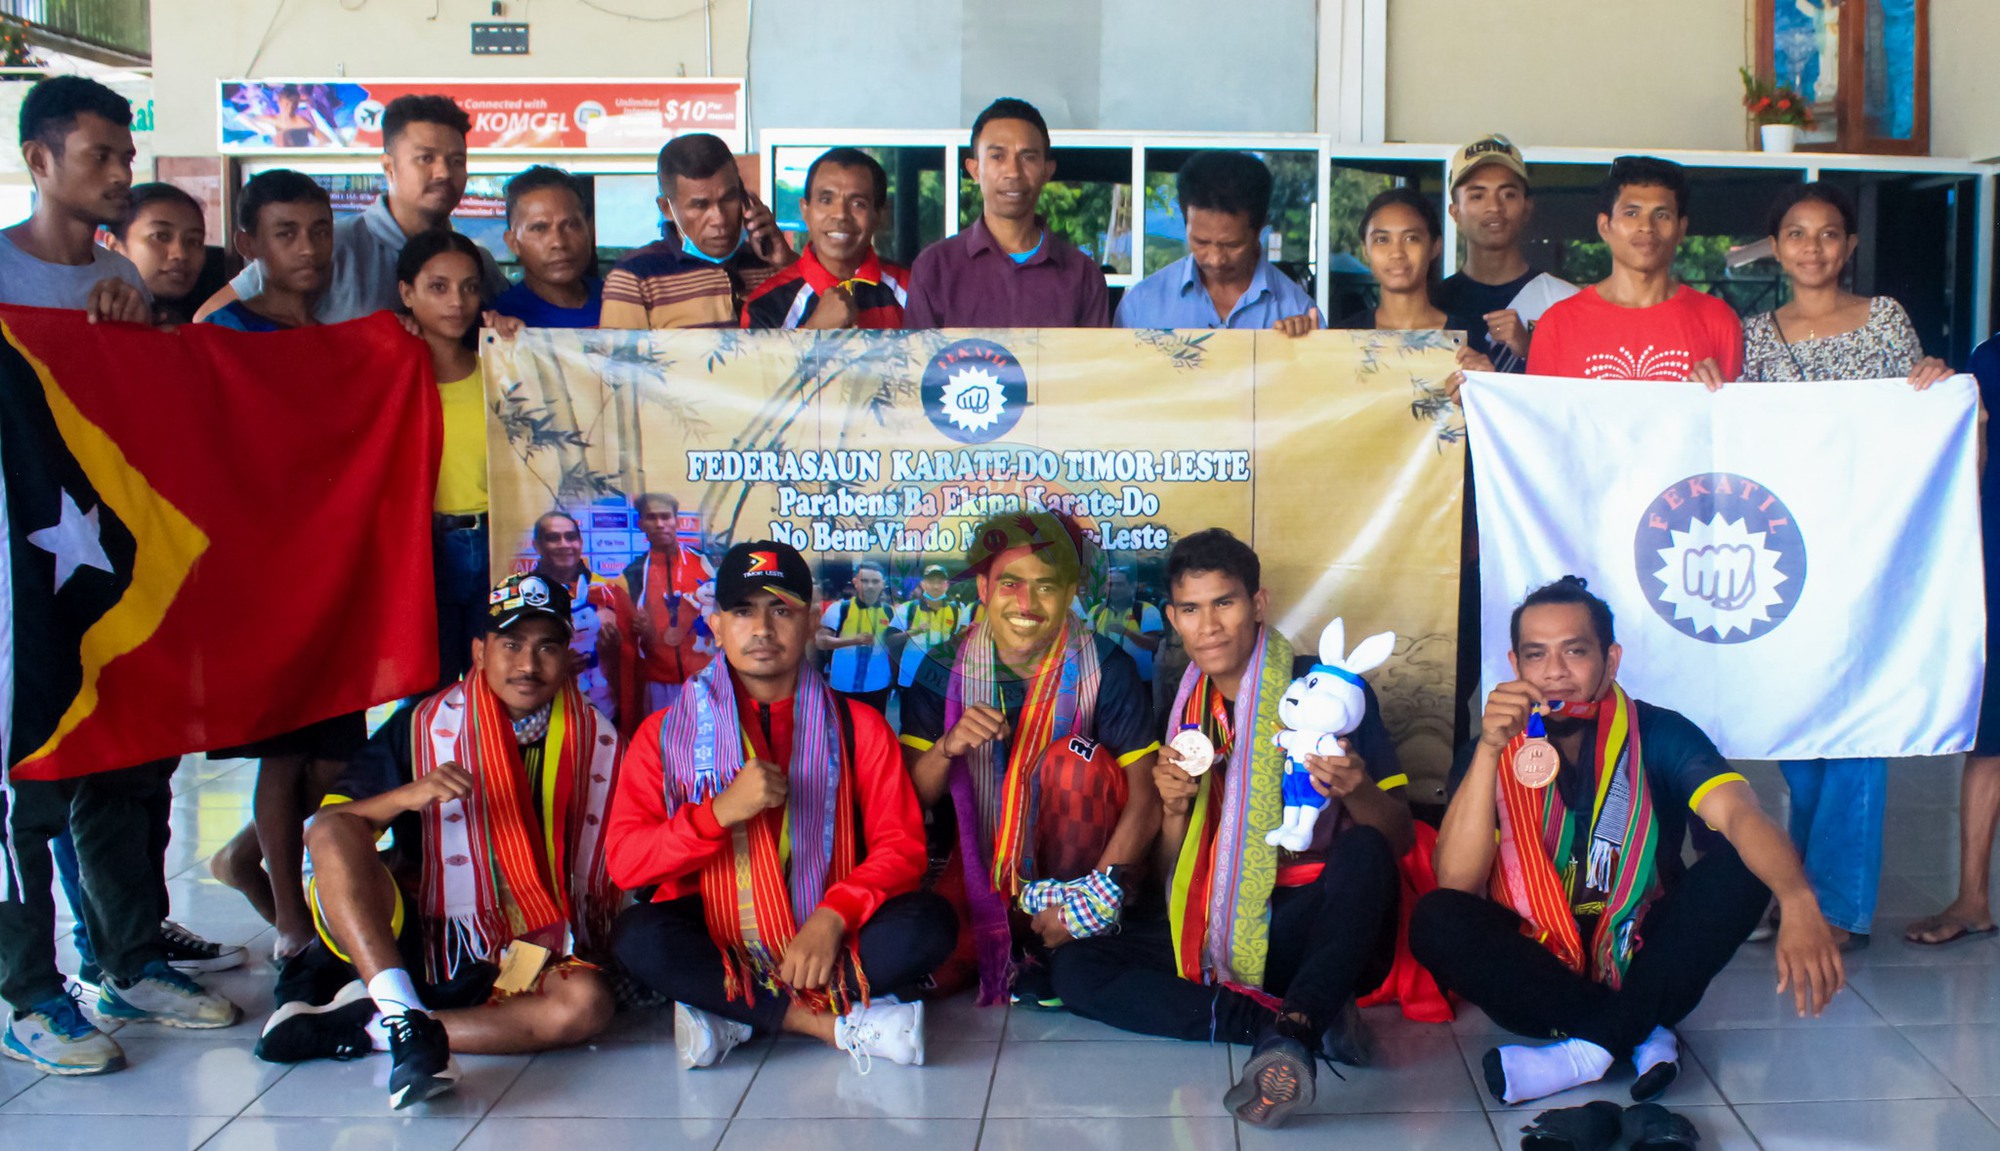 VĐV Timor Leste được chào đón như người hùng sau khi giành HCĐ SEA Games, HLV cảm thán: 'Thật tự hào' - Ảnh 2.